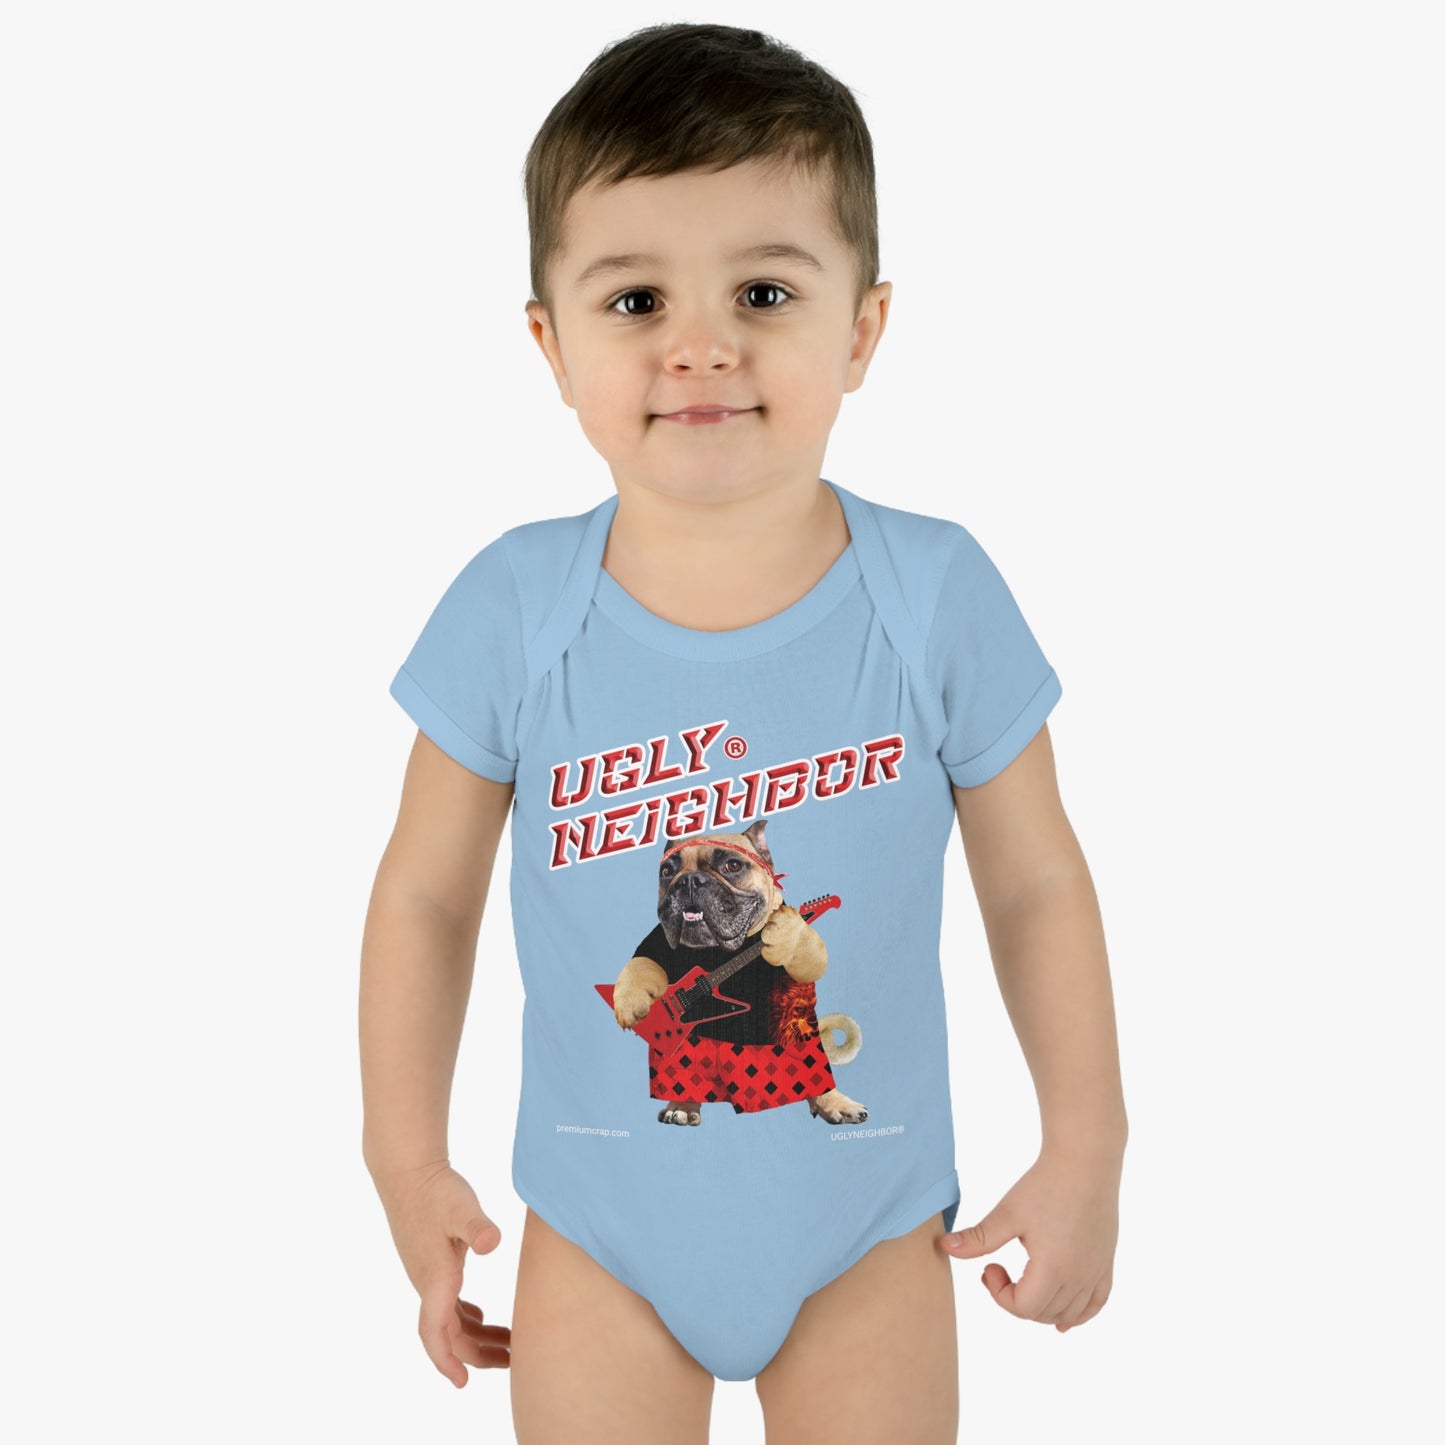 Ugly Neighbor II Infant Baby Rib Bodysuit